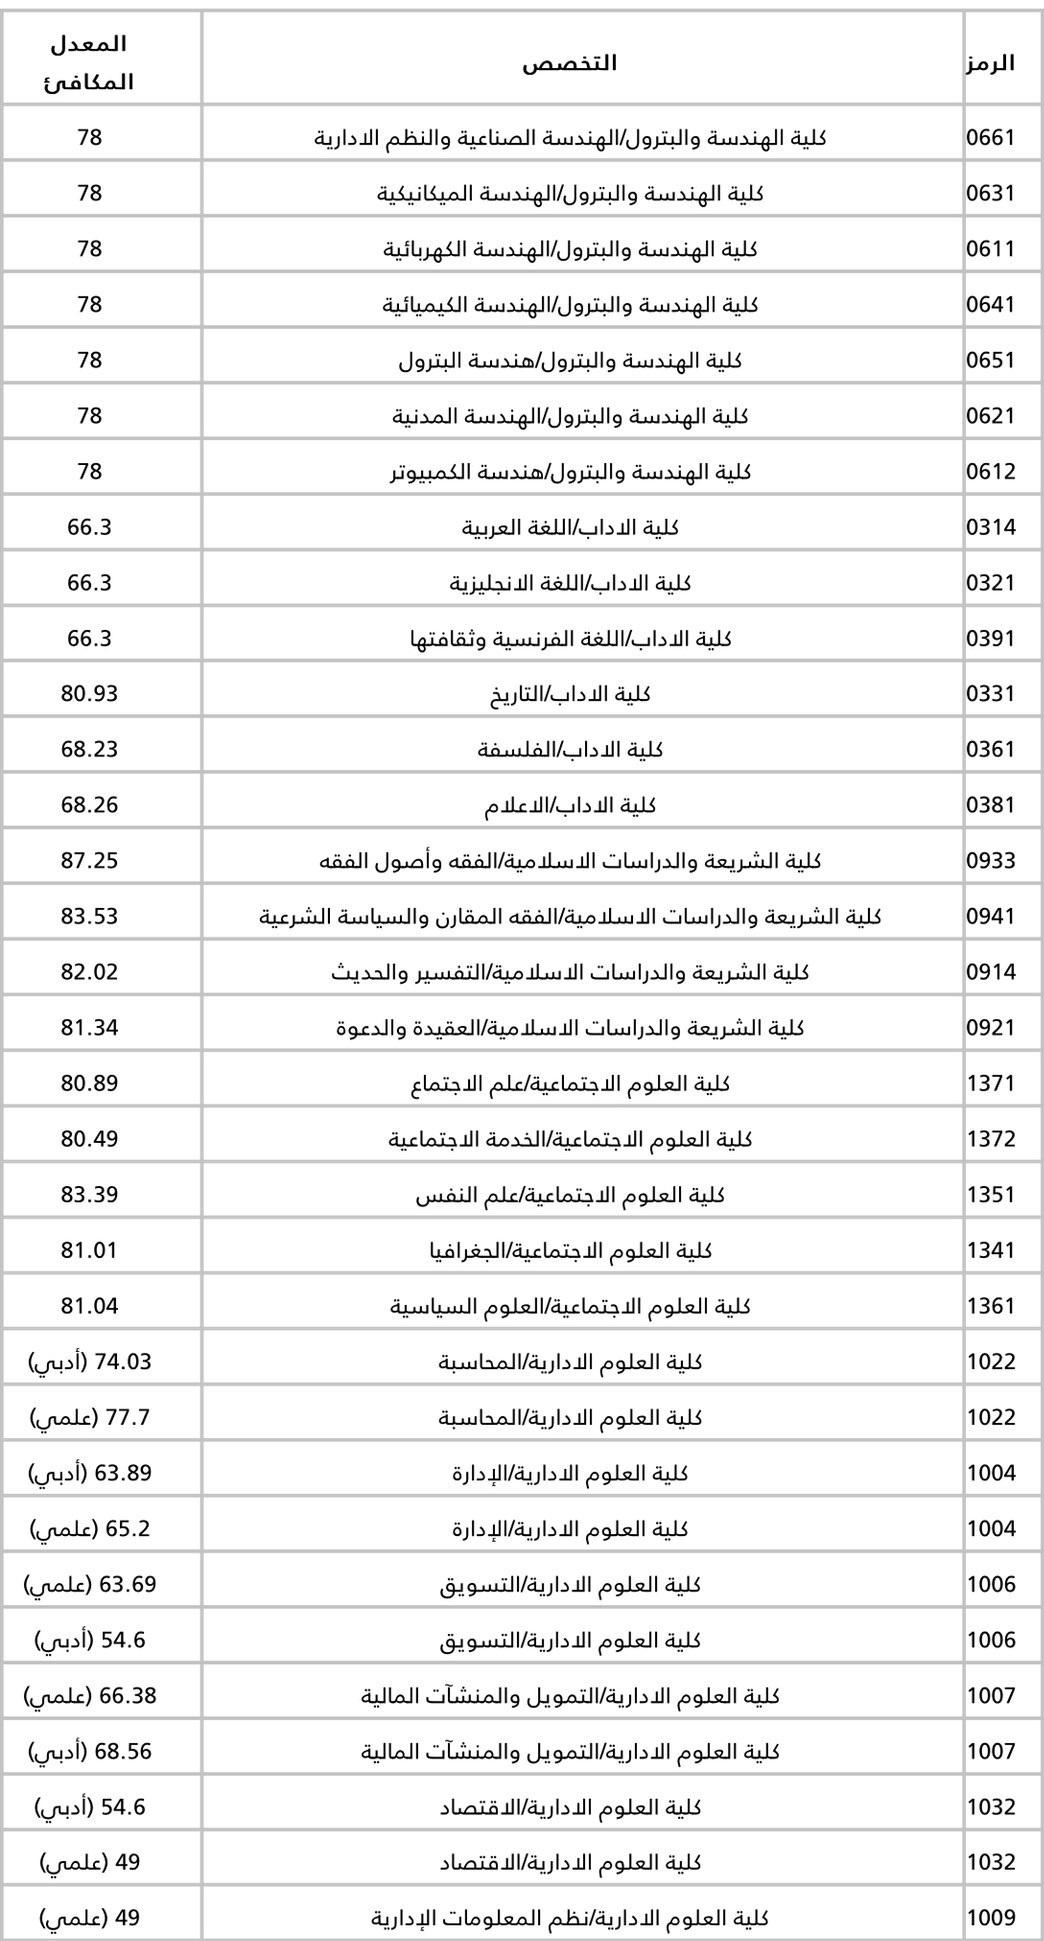 نسب القبول في جامعة الكويت 2020